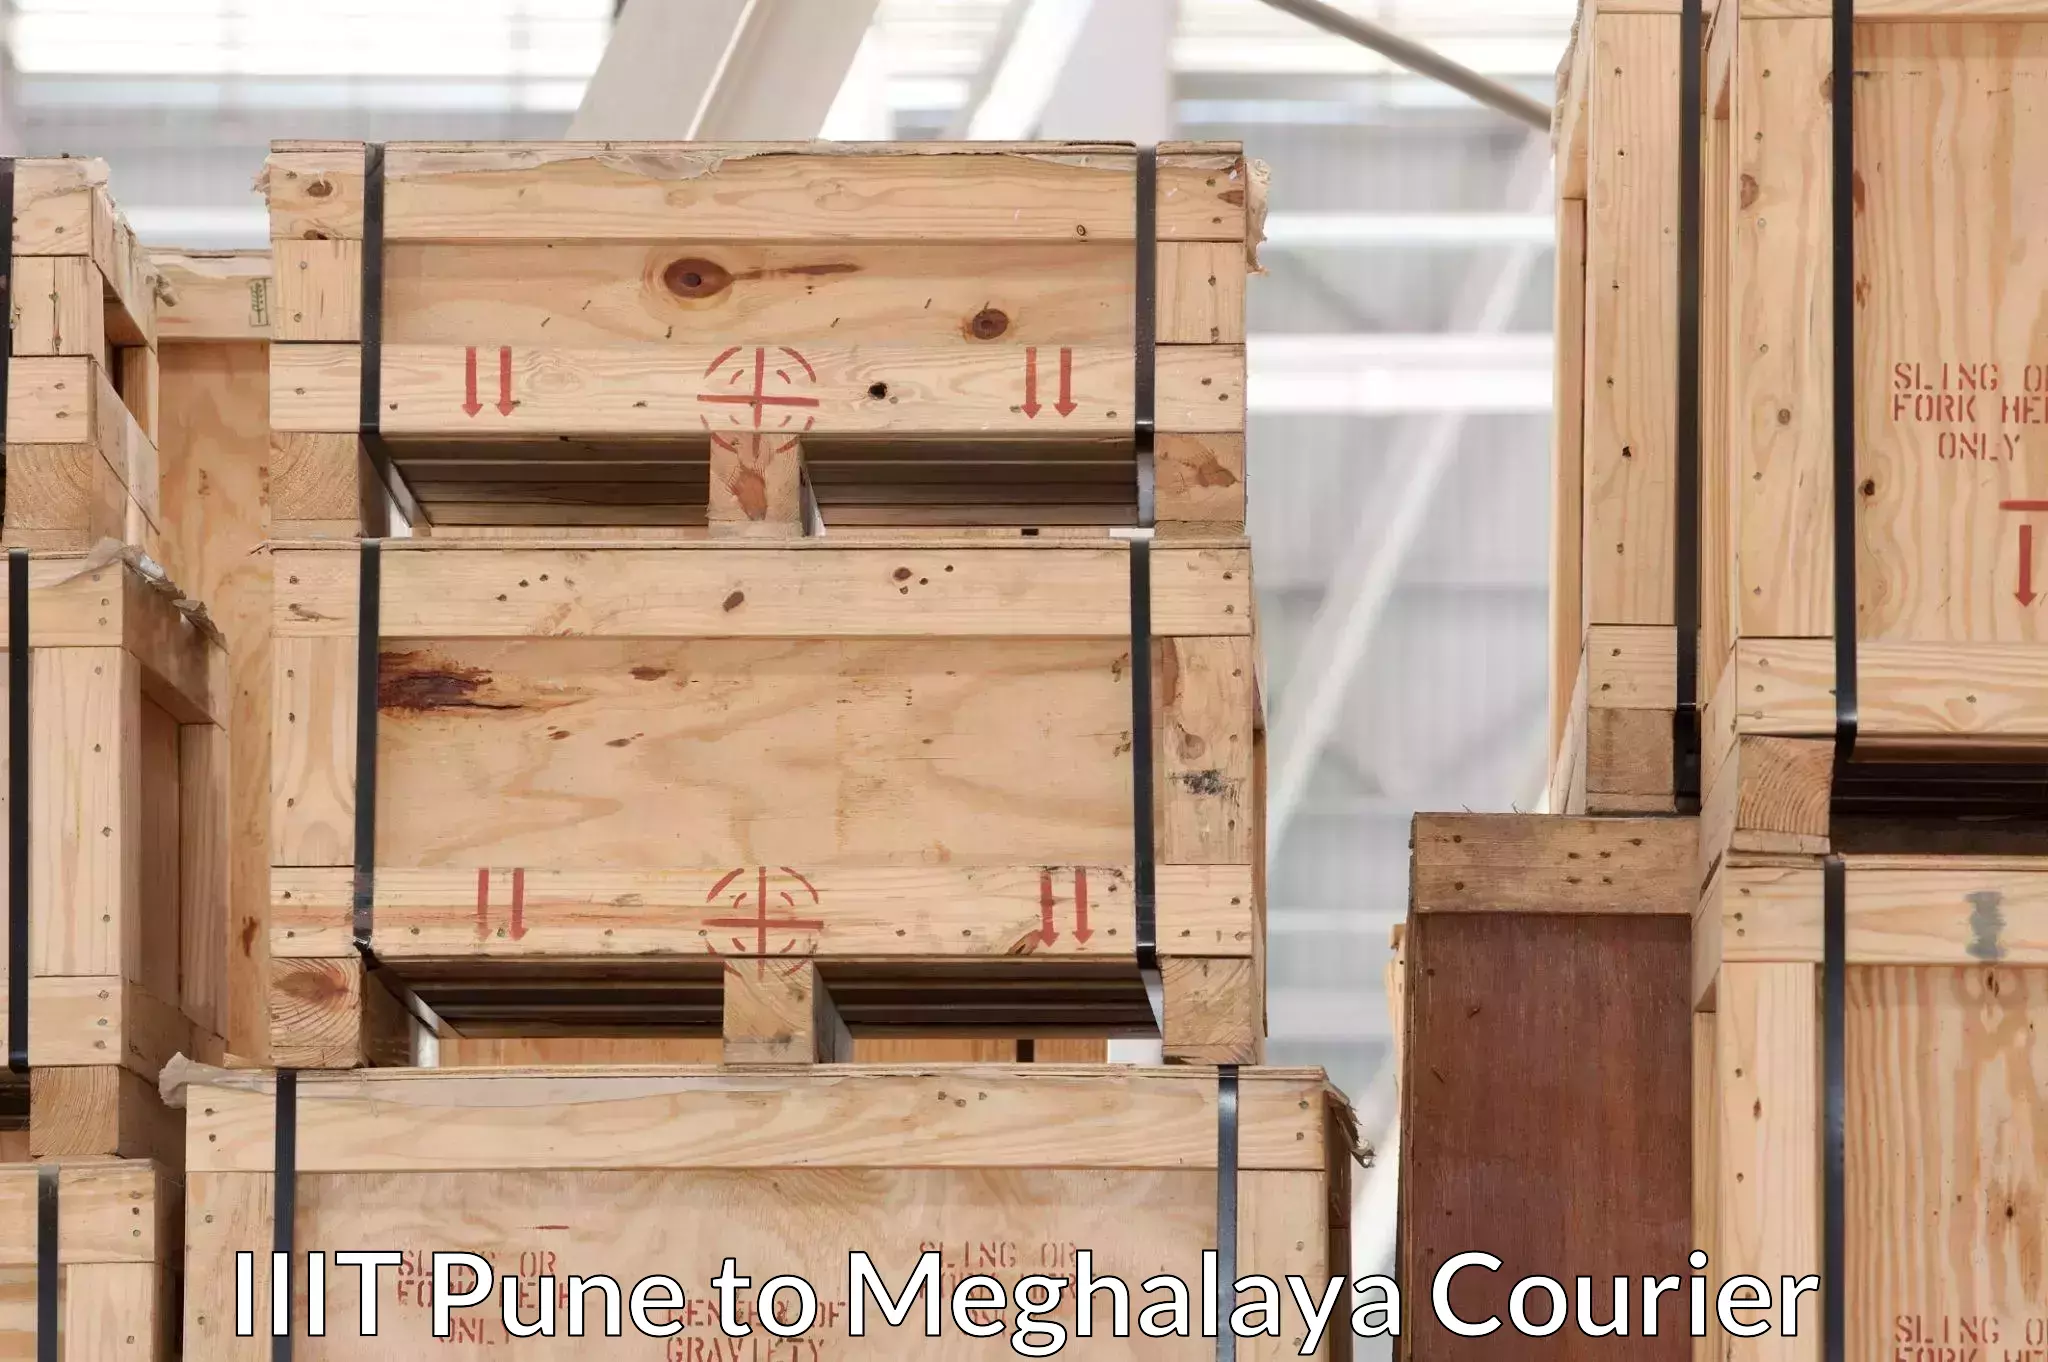 Furniture moving service IIIT Pune to Meghalaya